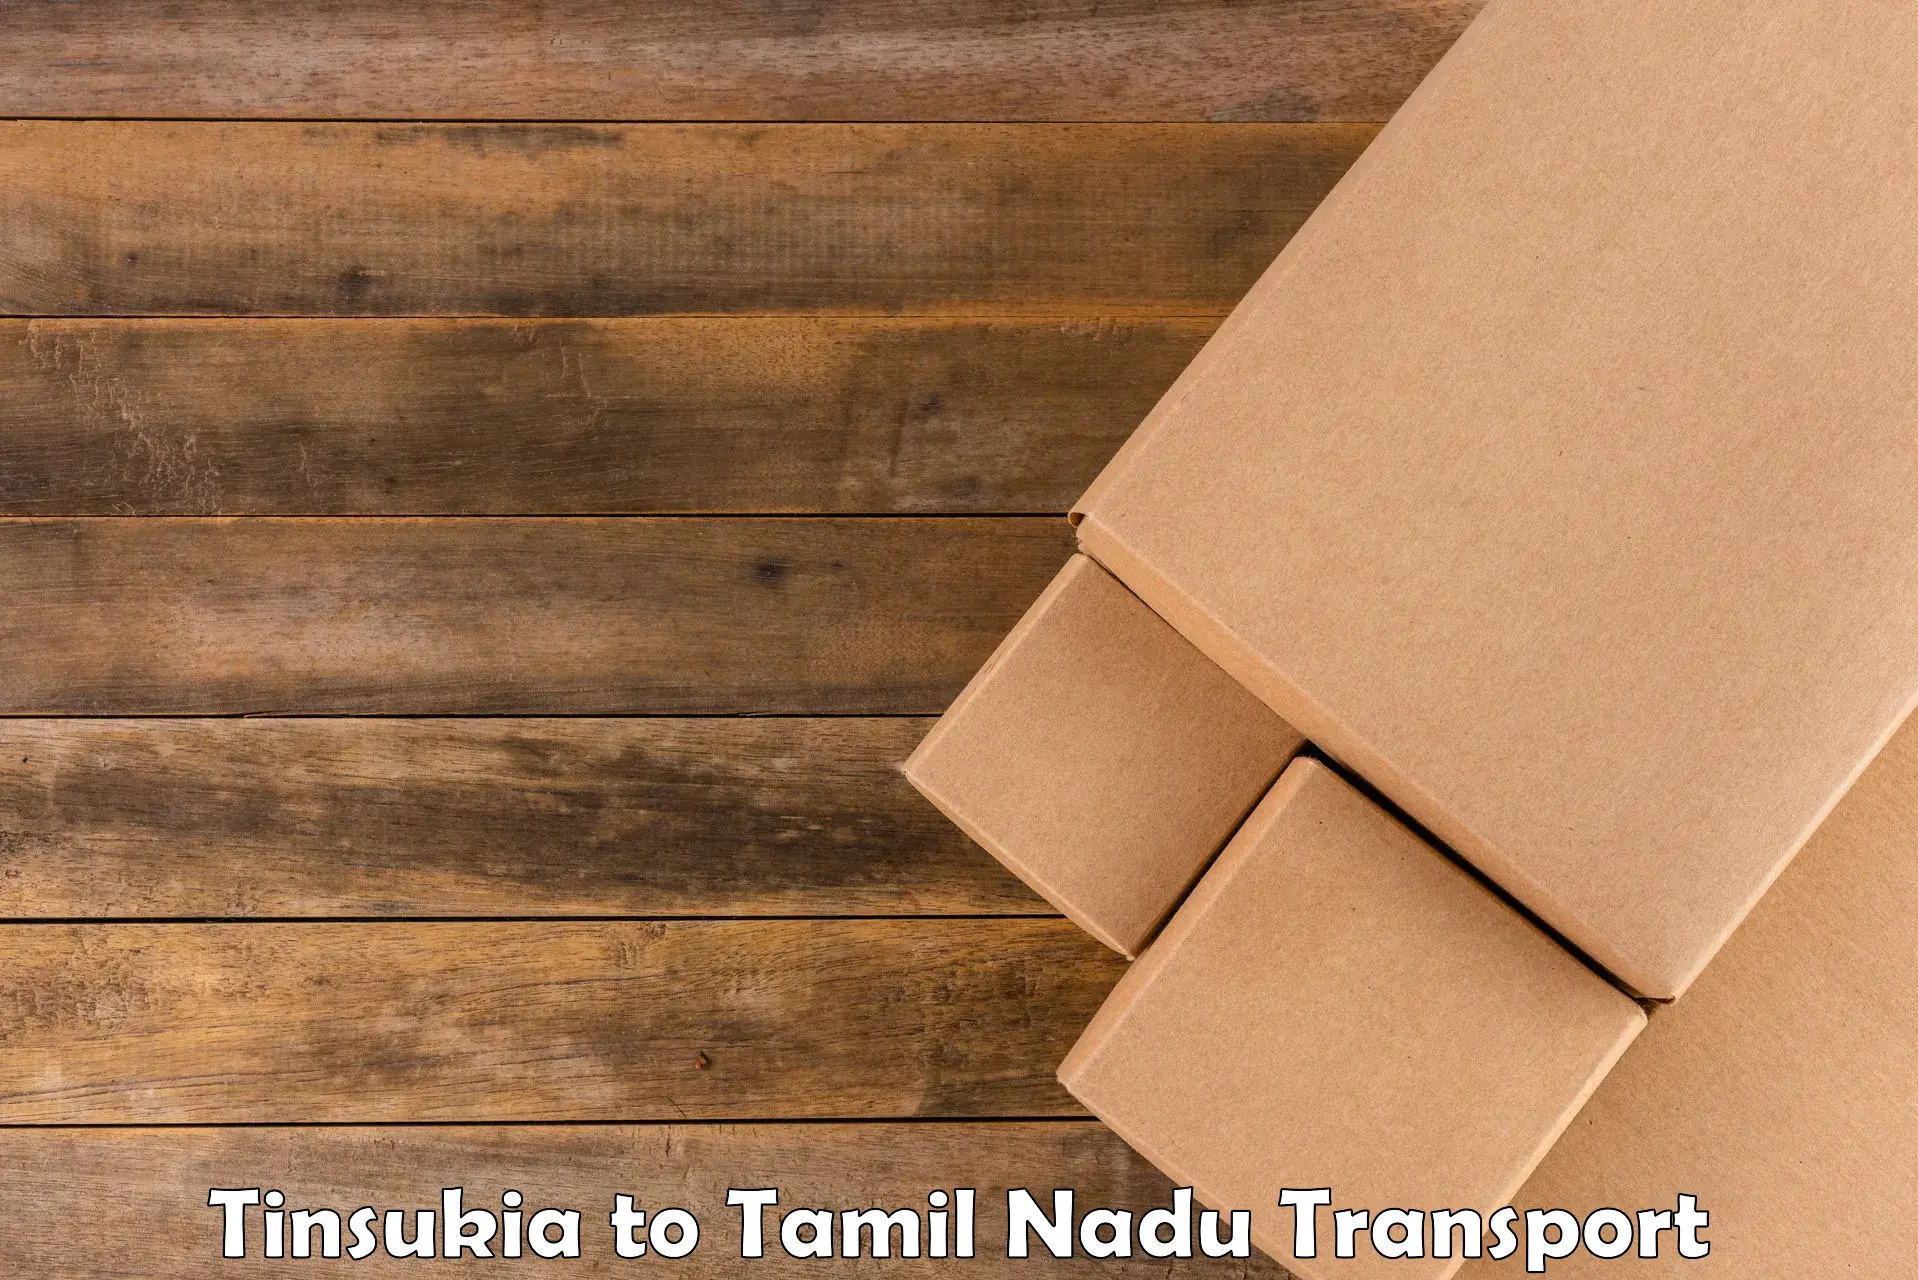 Cargo transport services Tinsukia to Ennore Port Chennai